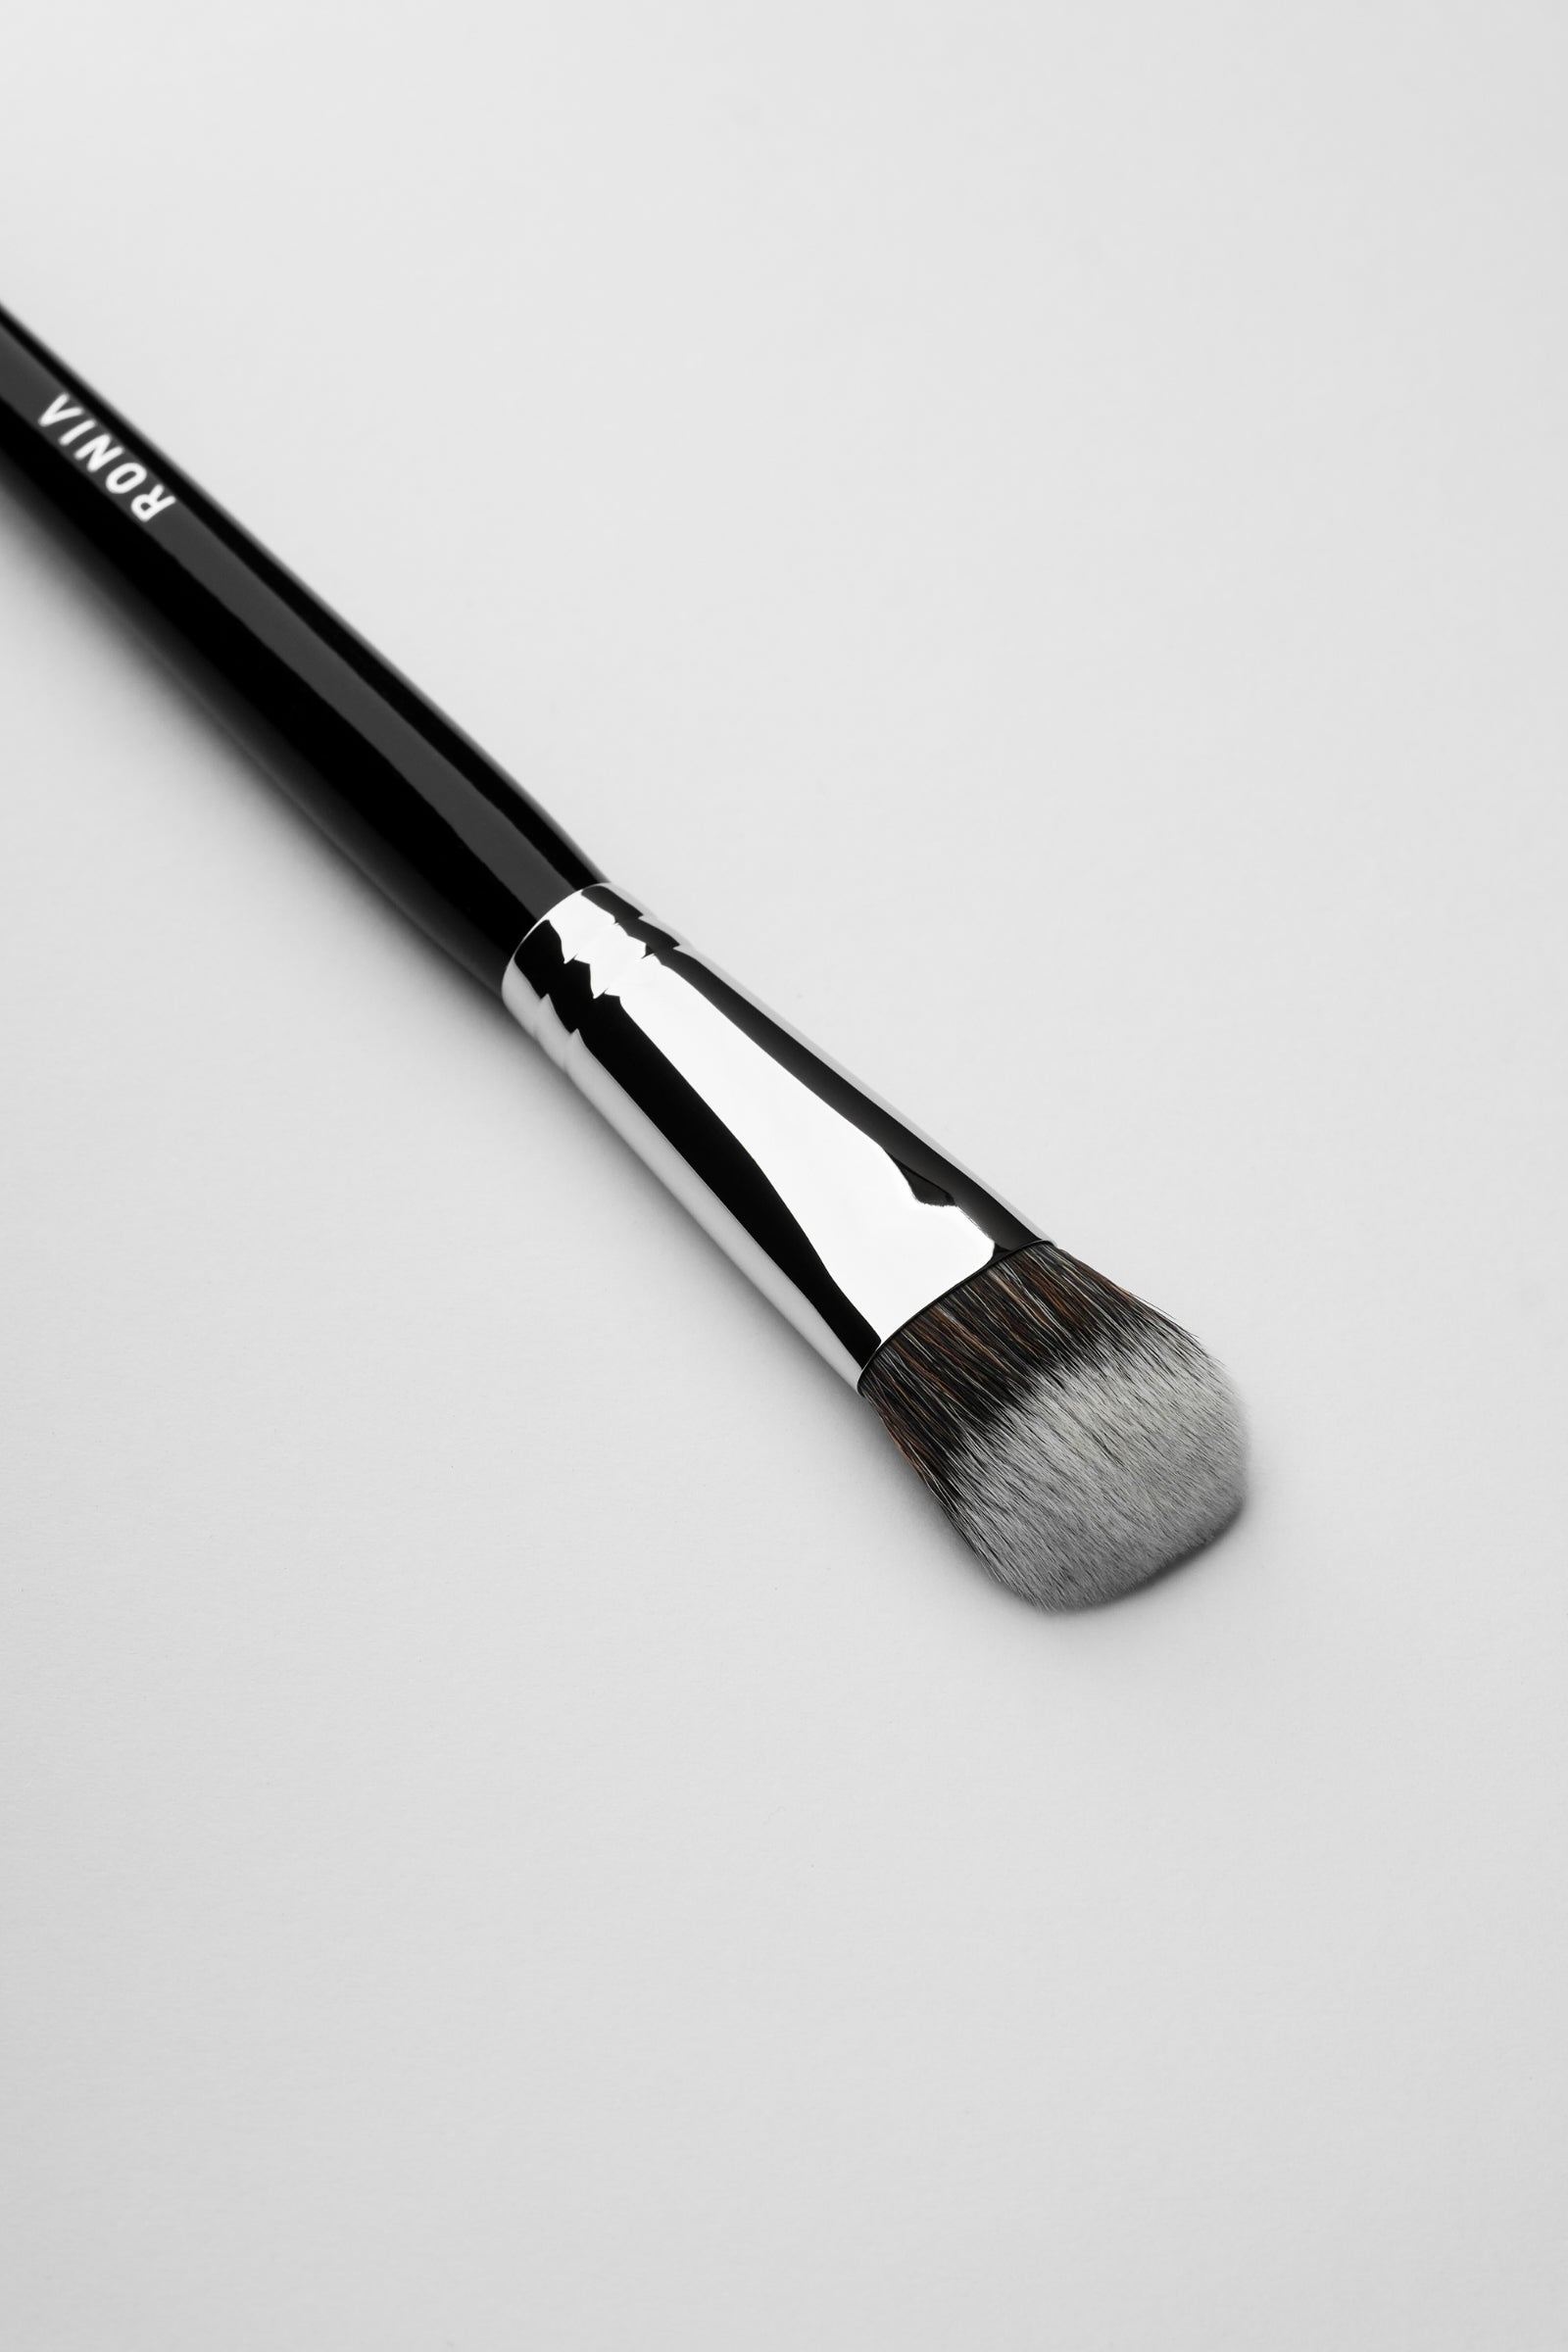  Foundation/contouring makeup brush